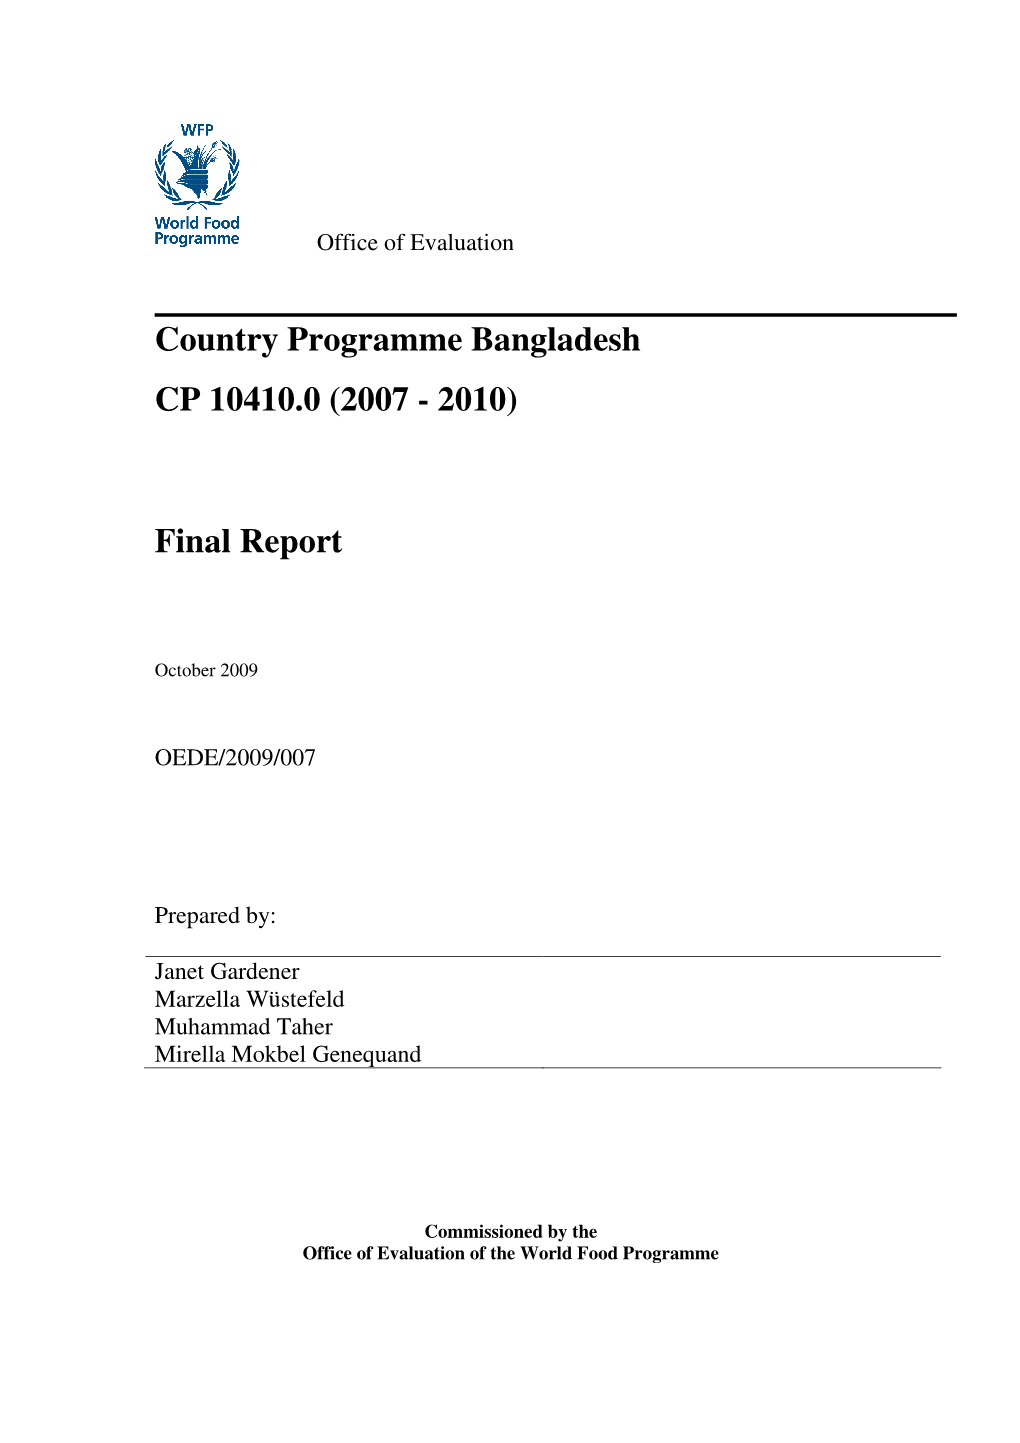 Country Programme Bangladesh CP 10410.0 (2007 - 2010)